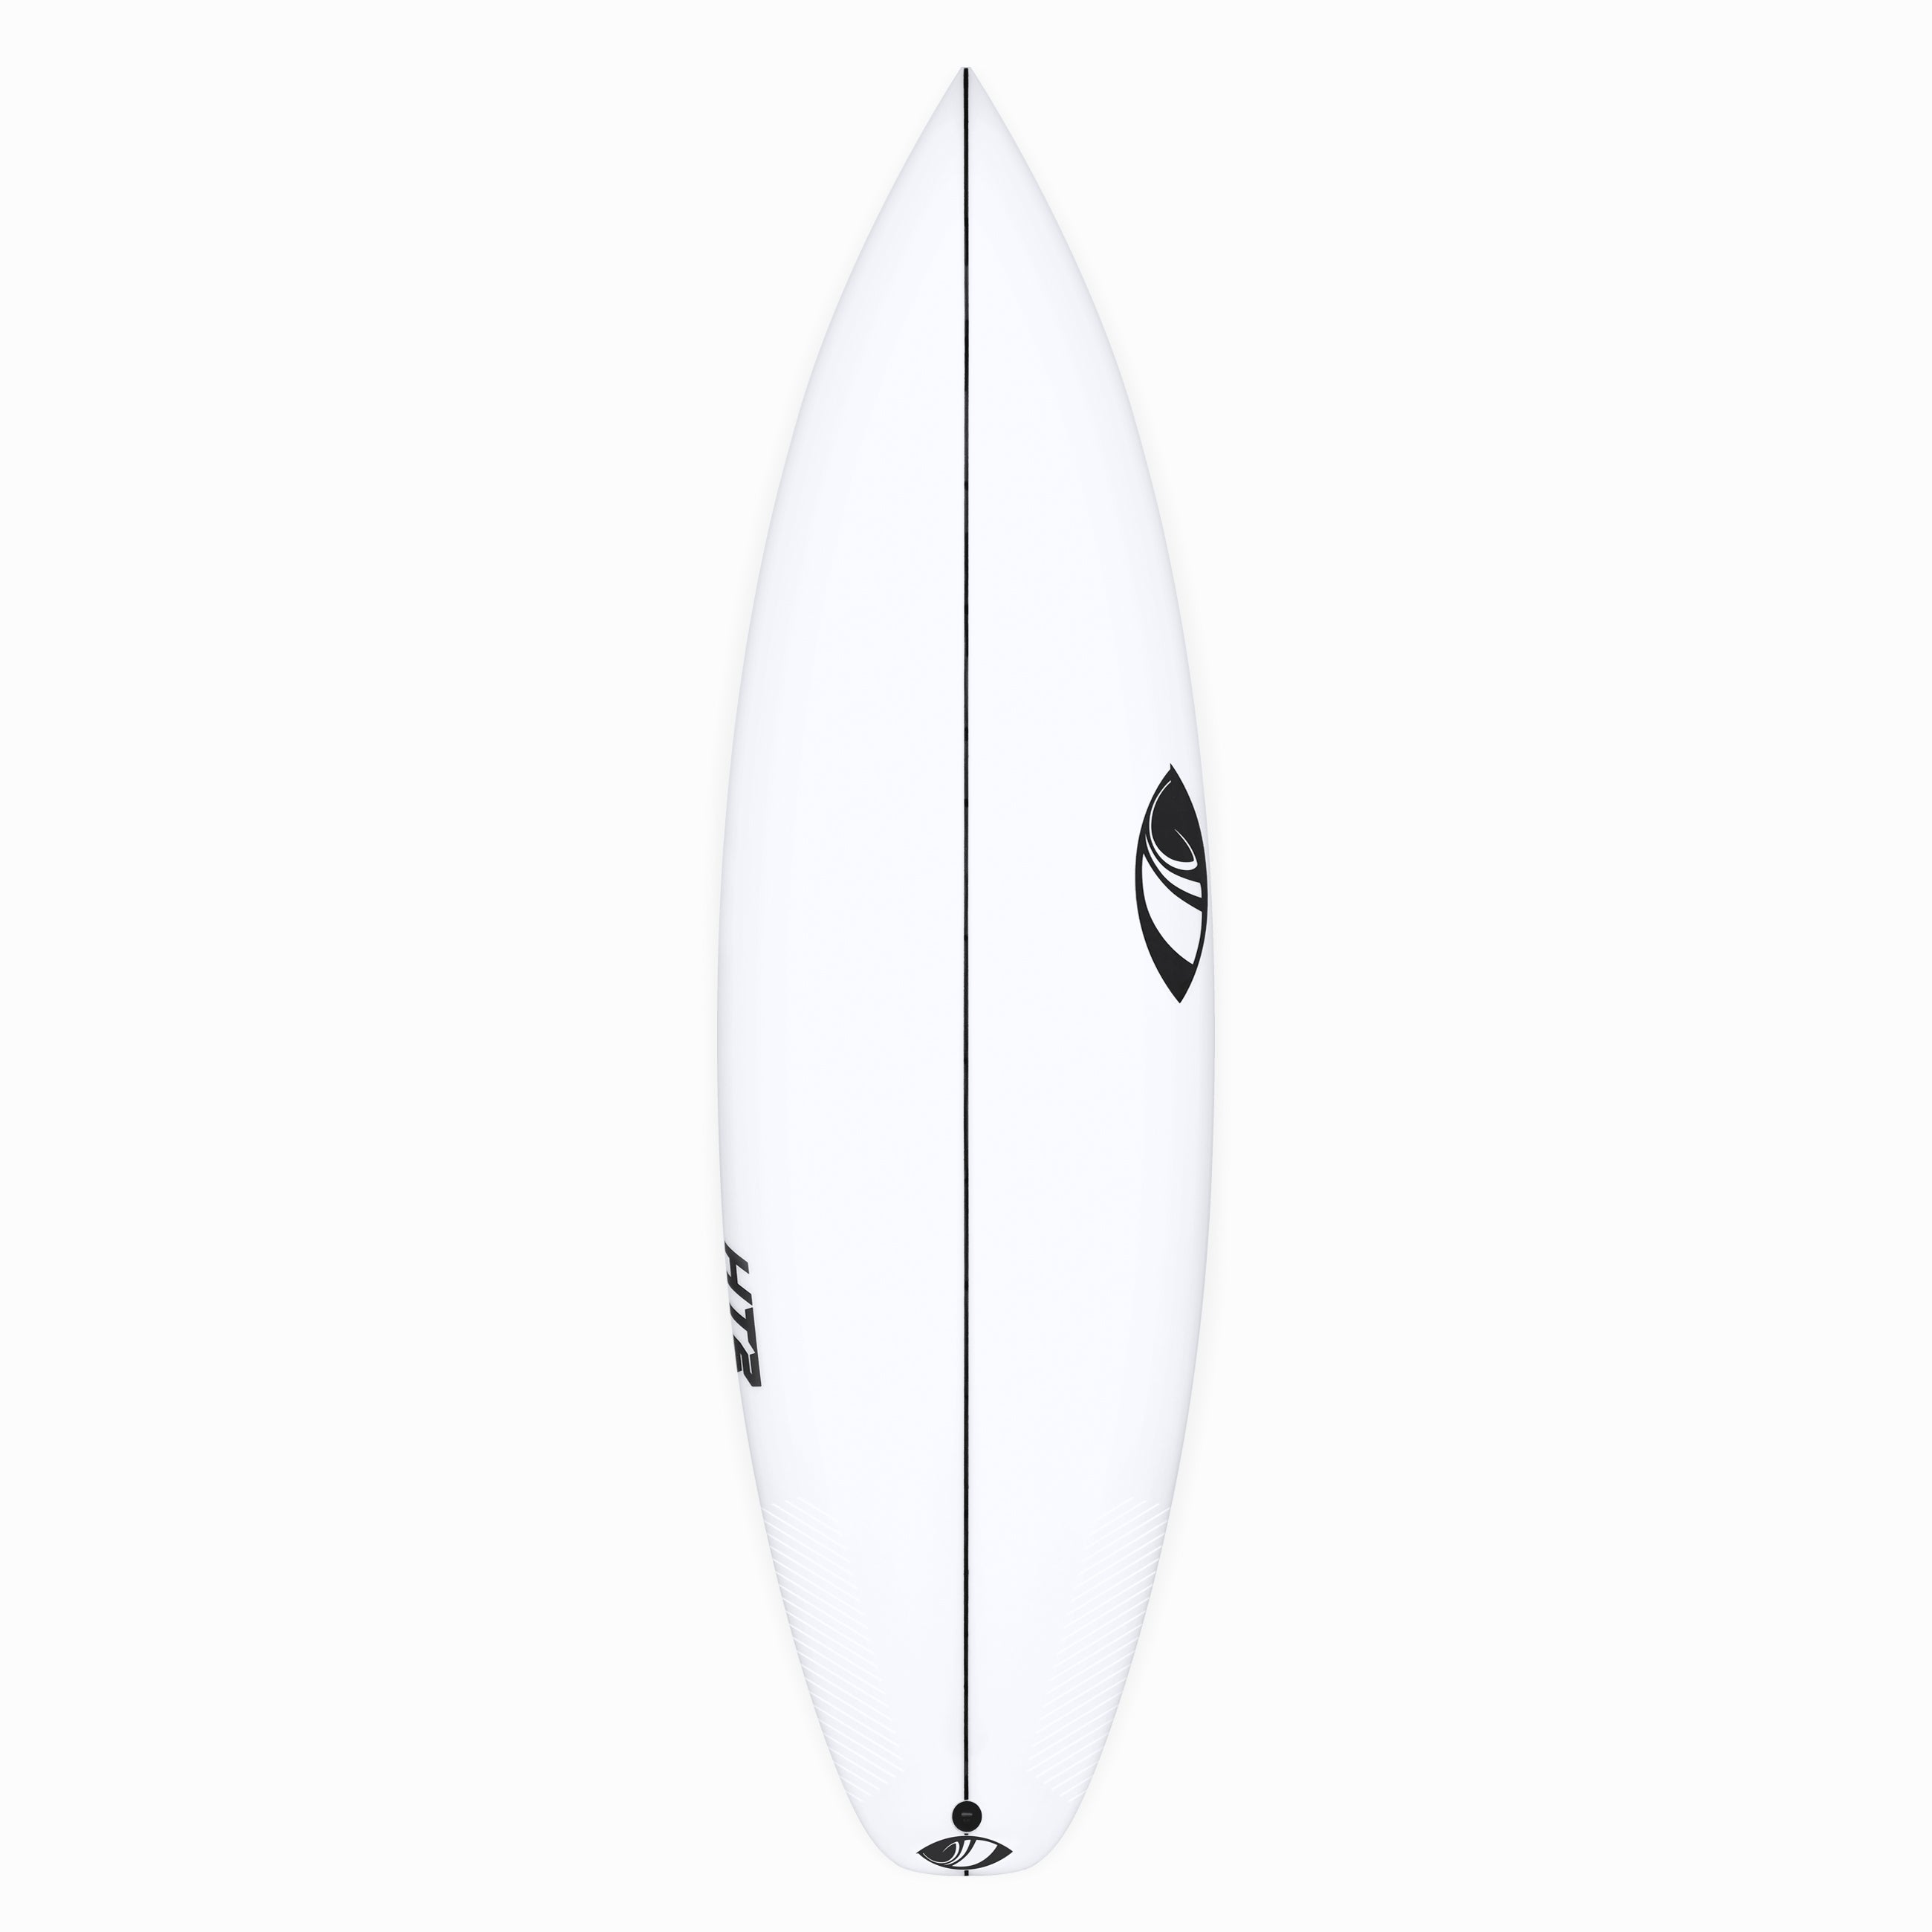 Full Range – Sharp Eye Surfboards